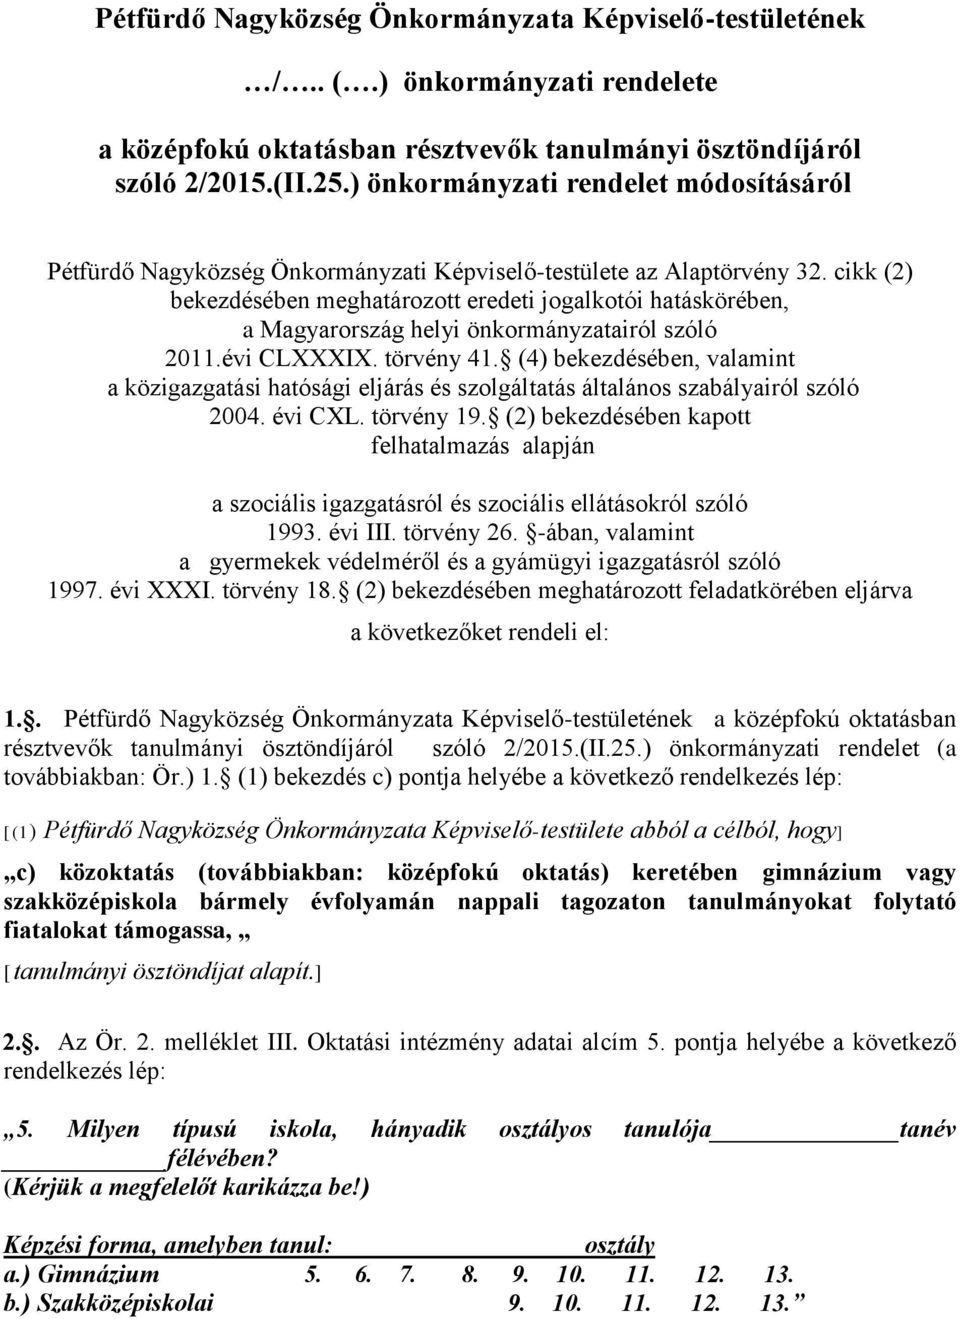 cikk (2) bekezdésében meghatározott eredeti jogalkotói hatáskörében, a Magyarország helyi önkormányzatairól szóló 2011.évi CLXXXIX. törvény 41.